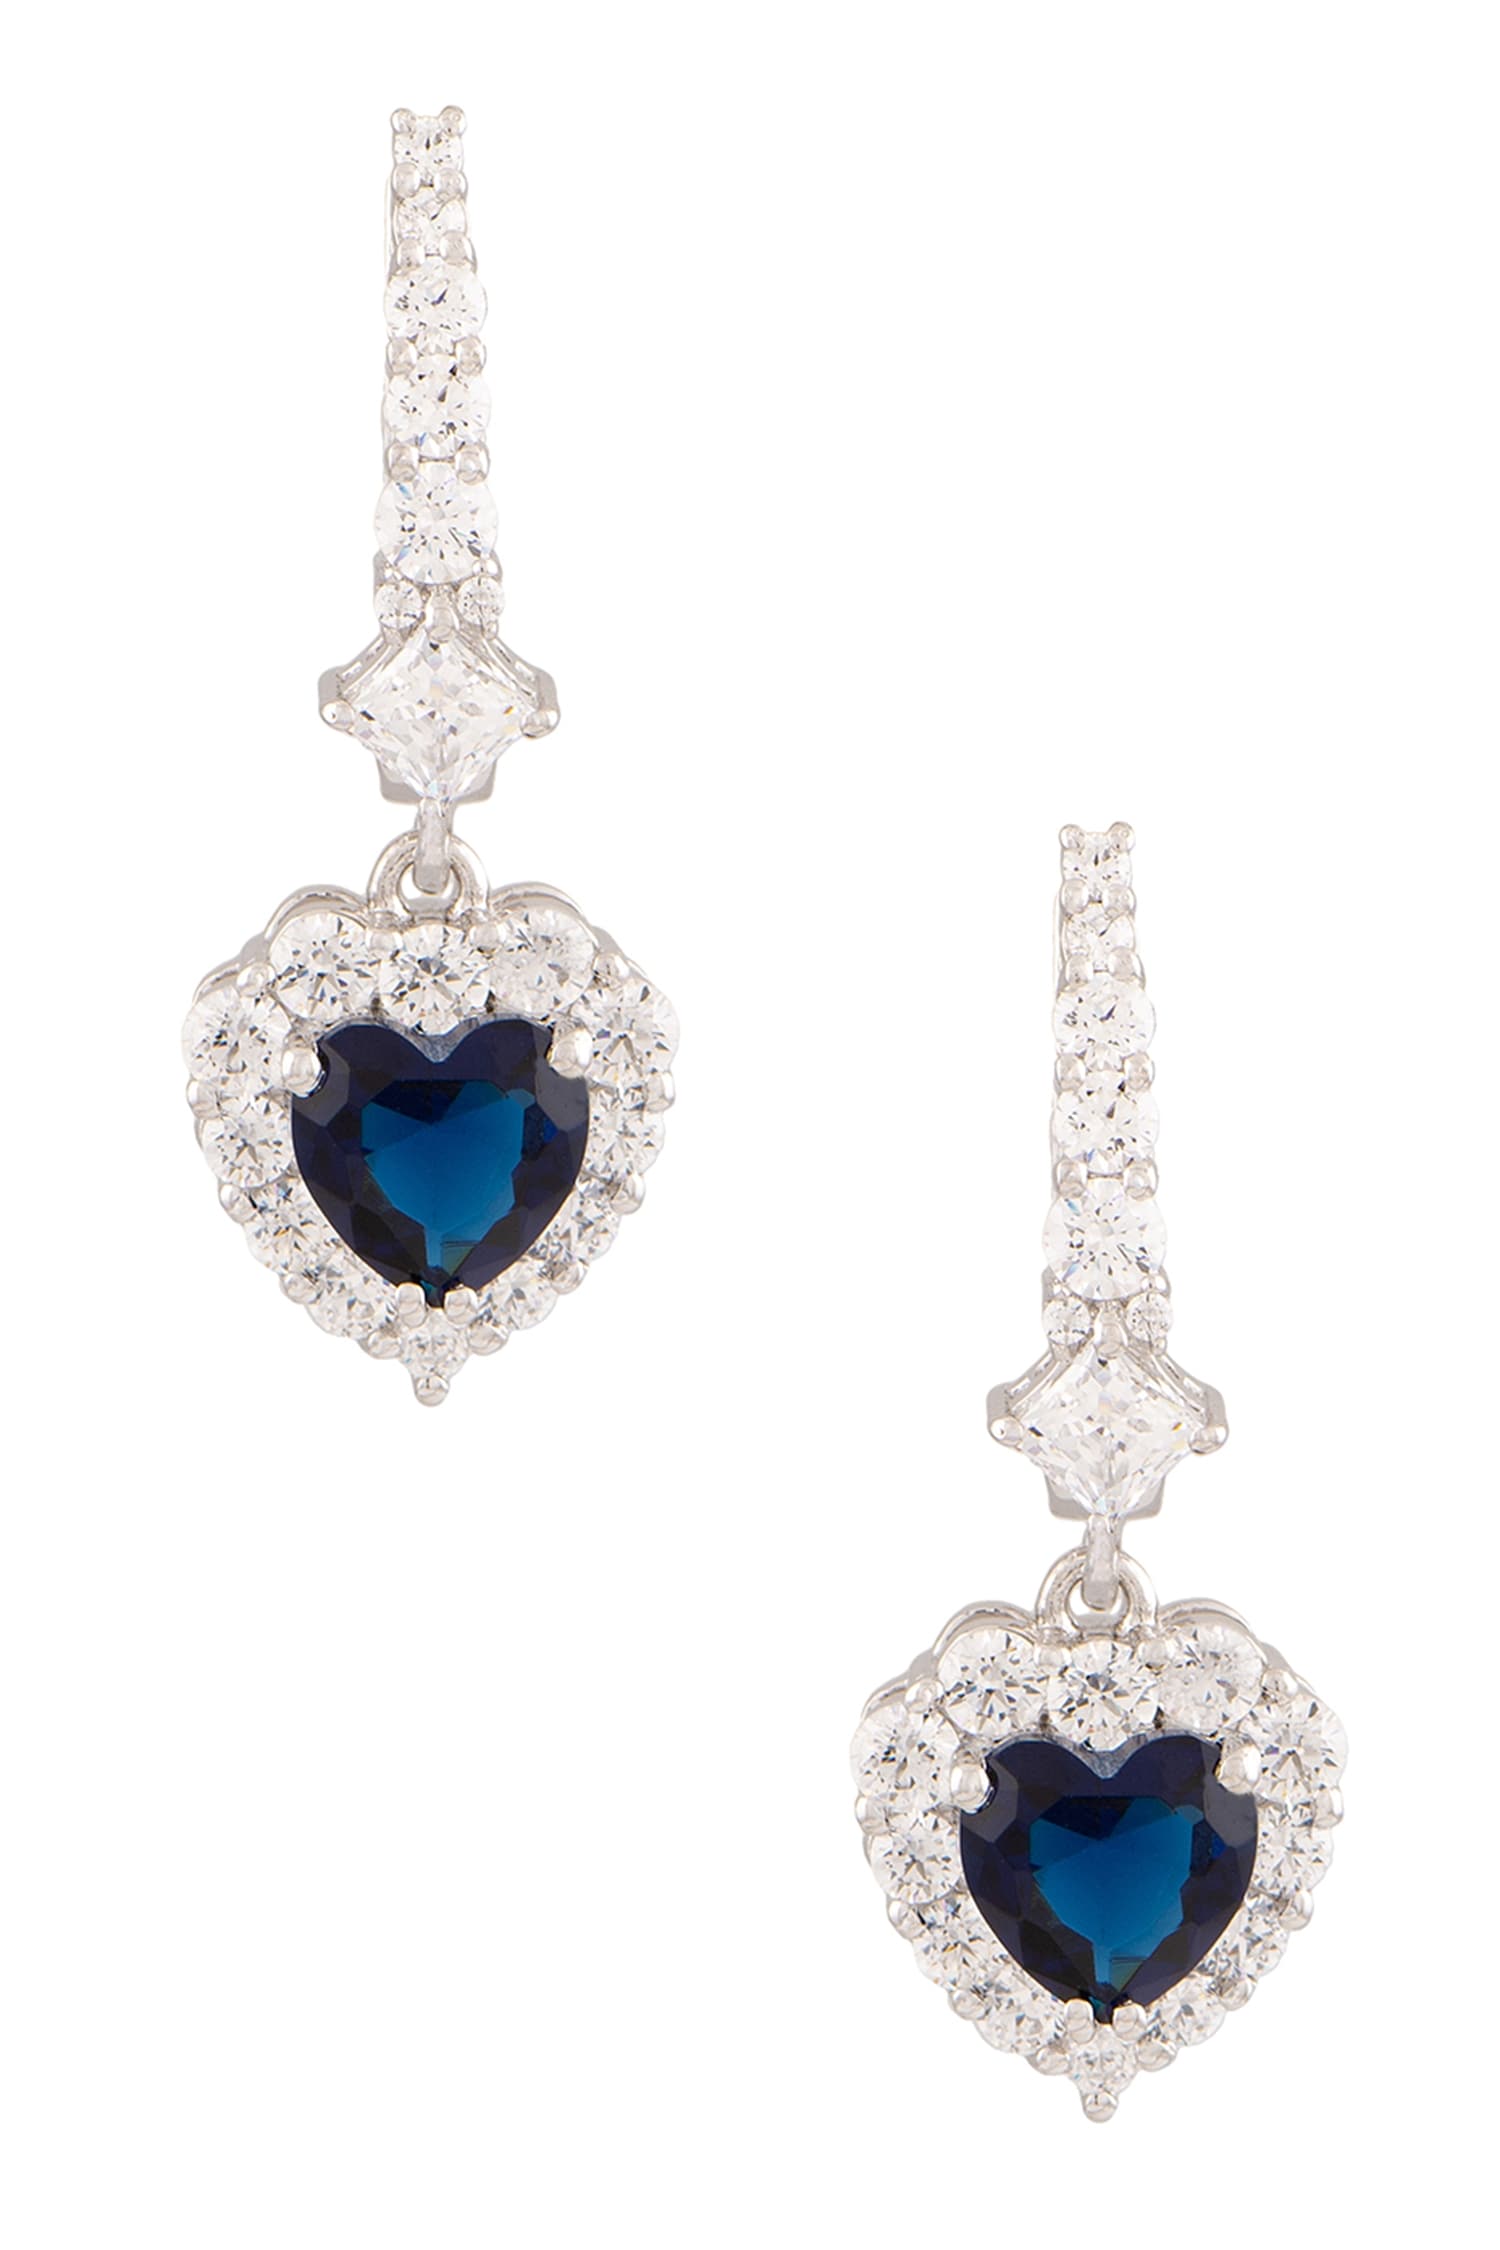 Buy Latest Blue Sapphire Earrings Online  Sapphire Sone Kalyan